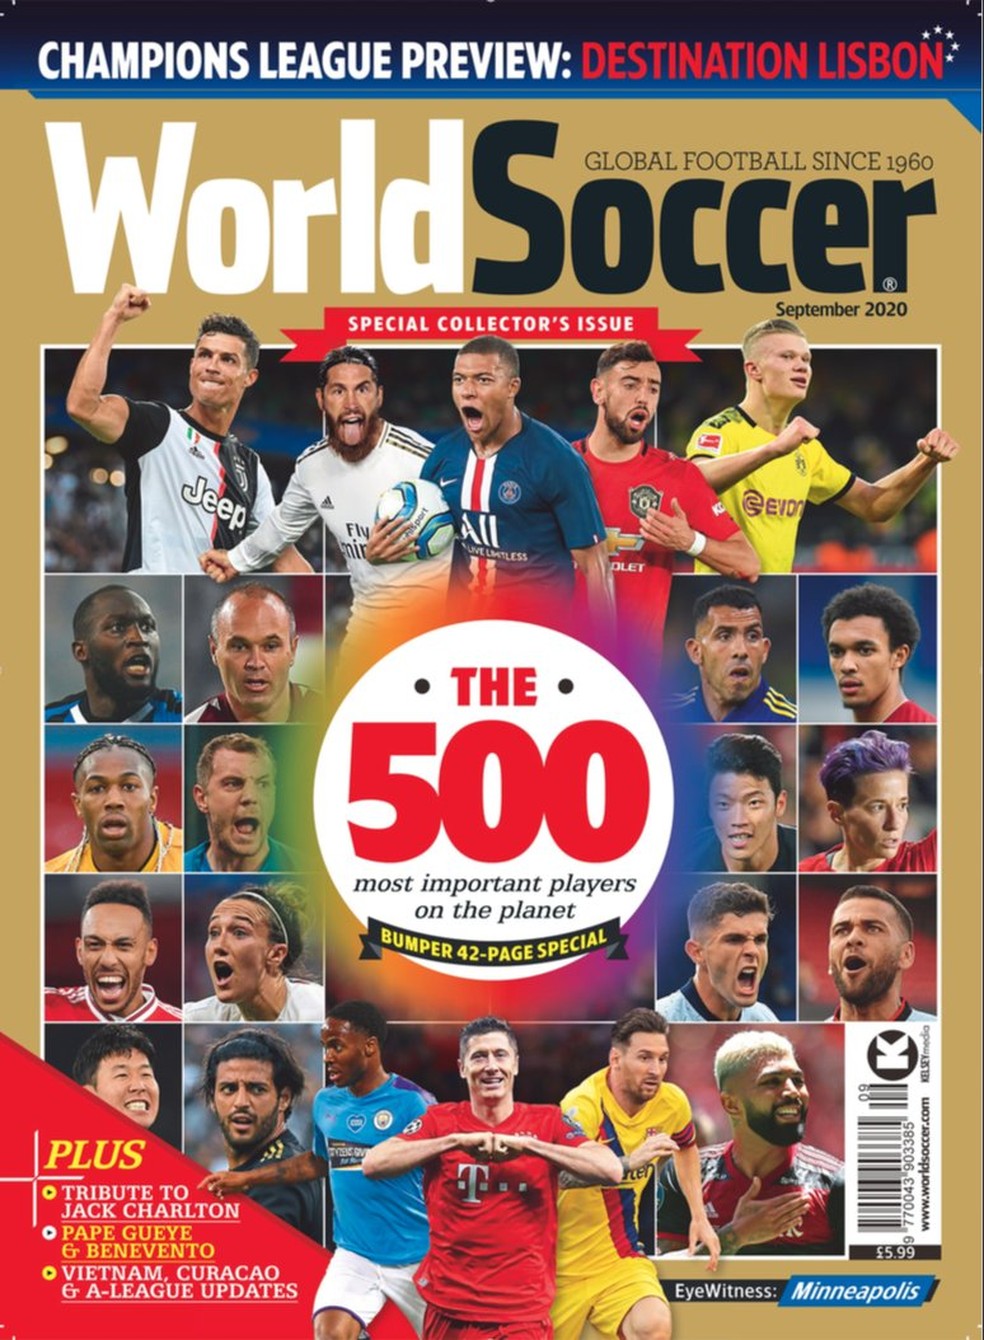 Gabigol e Daniel Alves entram na lista dos 500 jogadores mais importantes